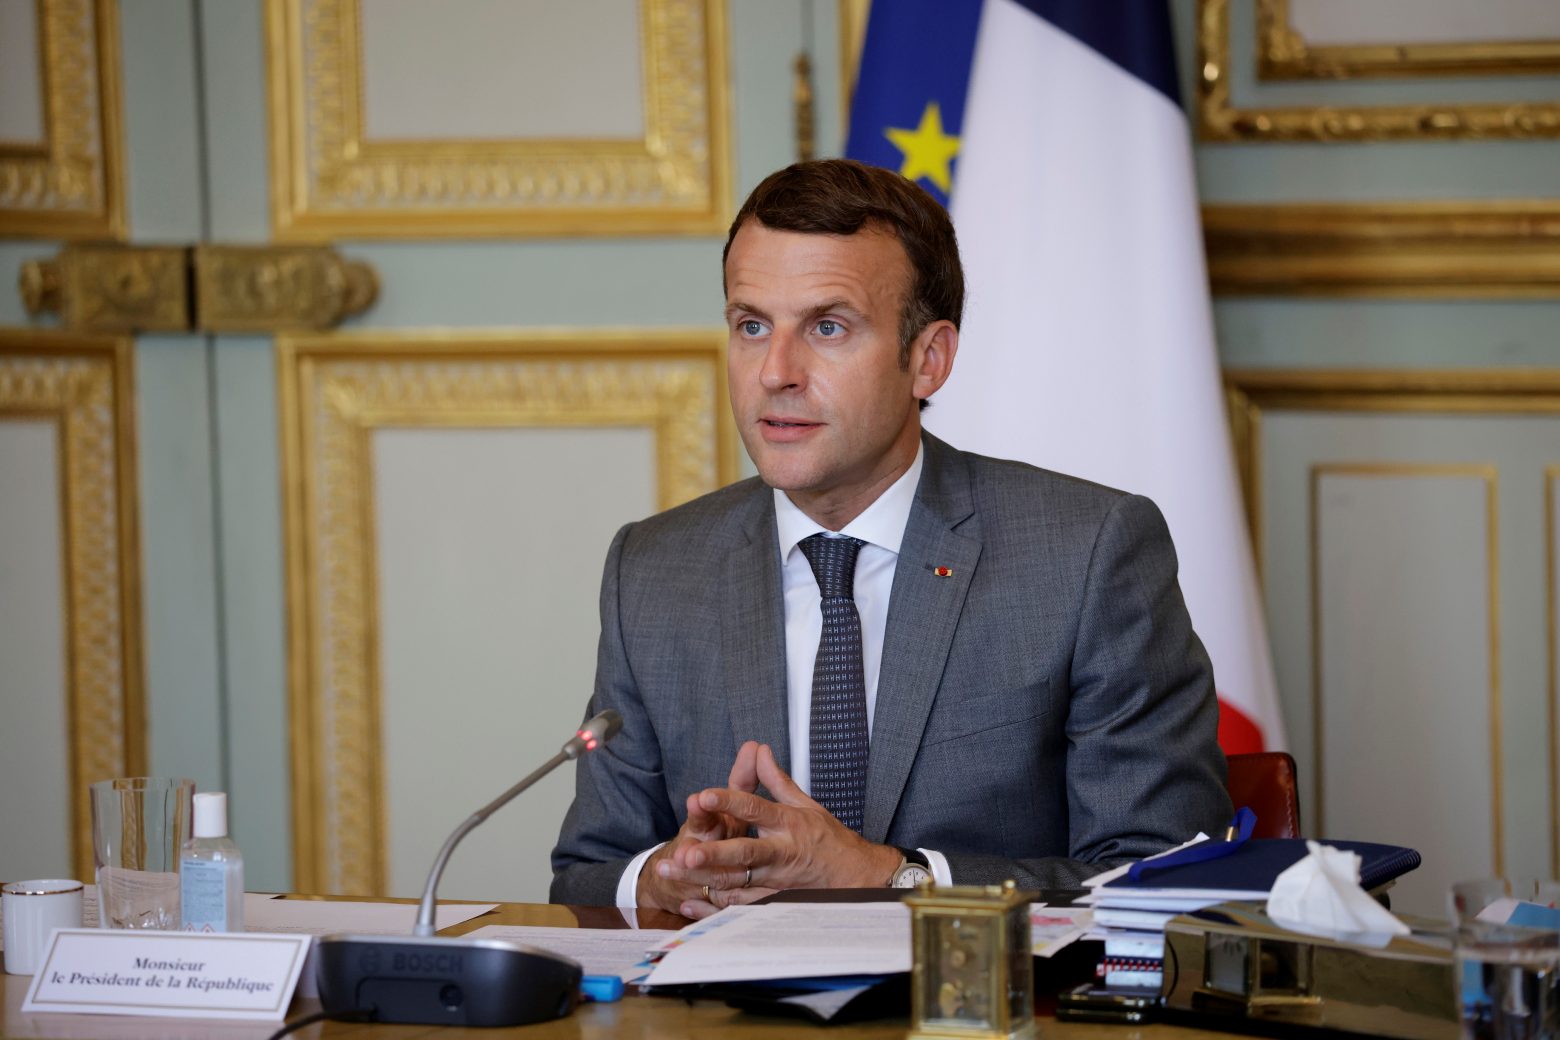 Μακρόν - Παρουσιάζει σε συνέντευξη Τύπου τις προτεραιότητες της γαλλικής προεδρίας στην ΕΕ